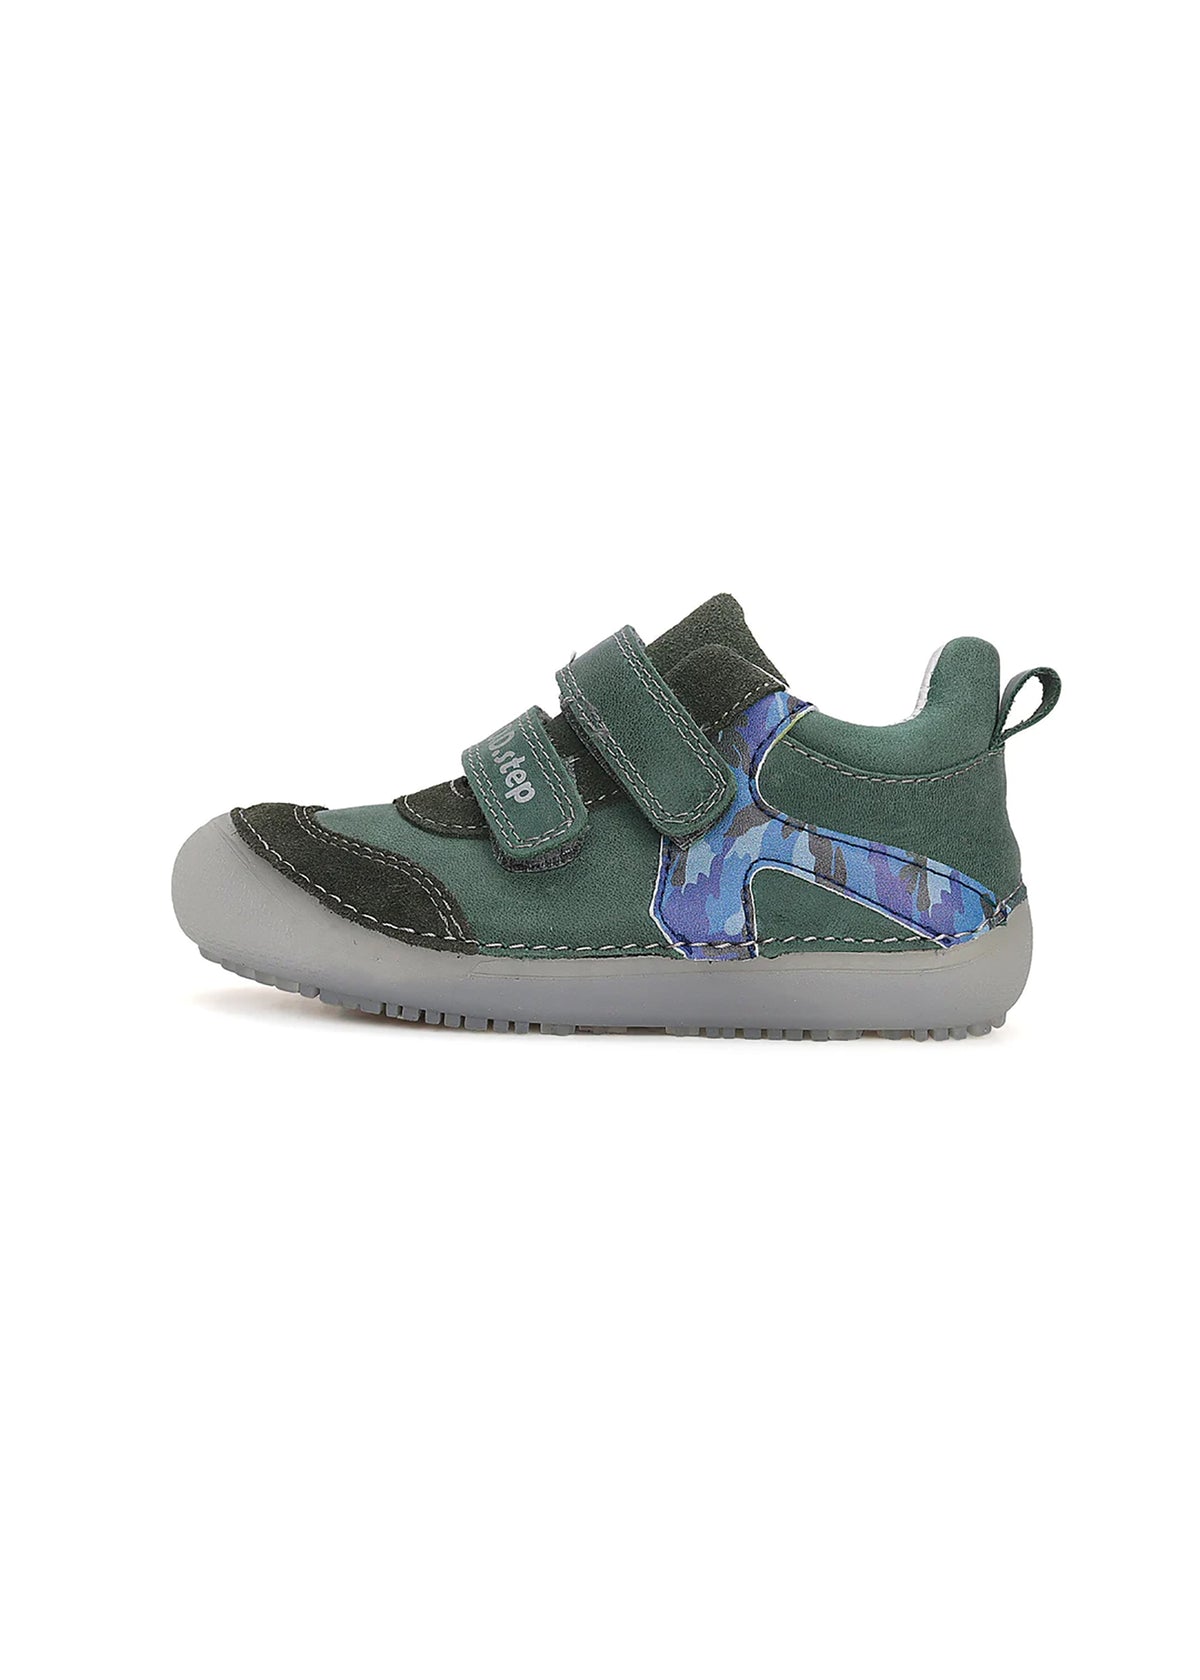 Barfotasneakers för barn - grönt läder, blåmönstrad rand och sula